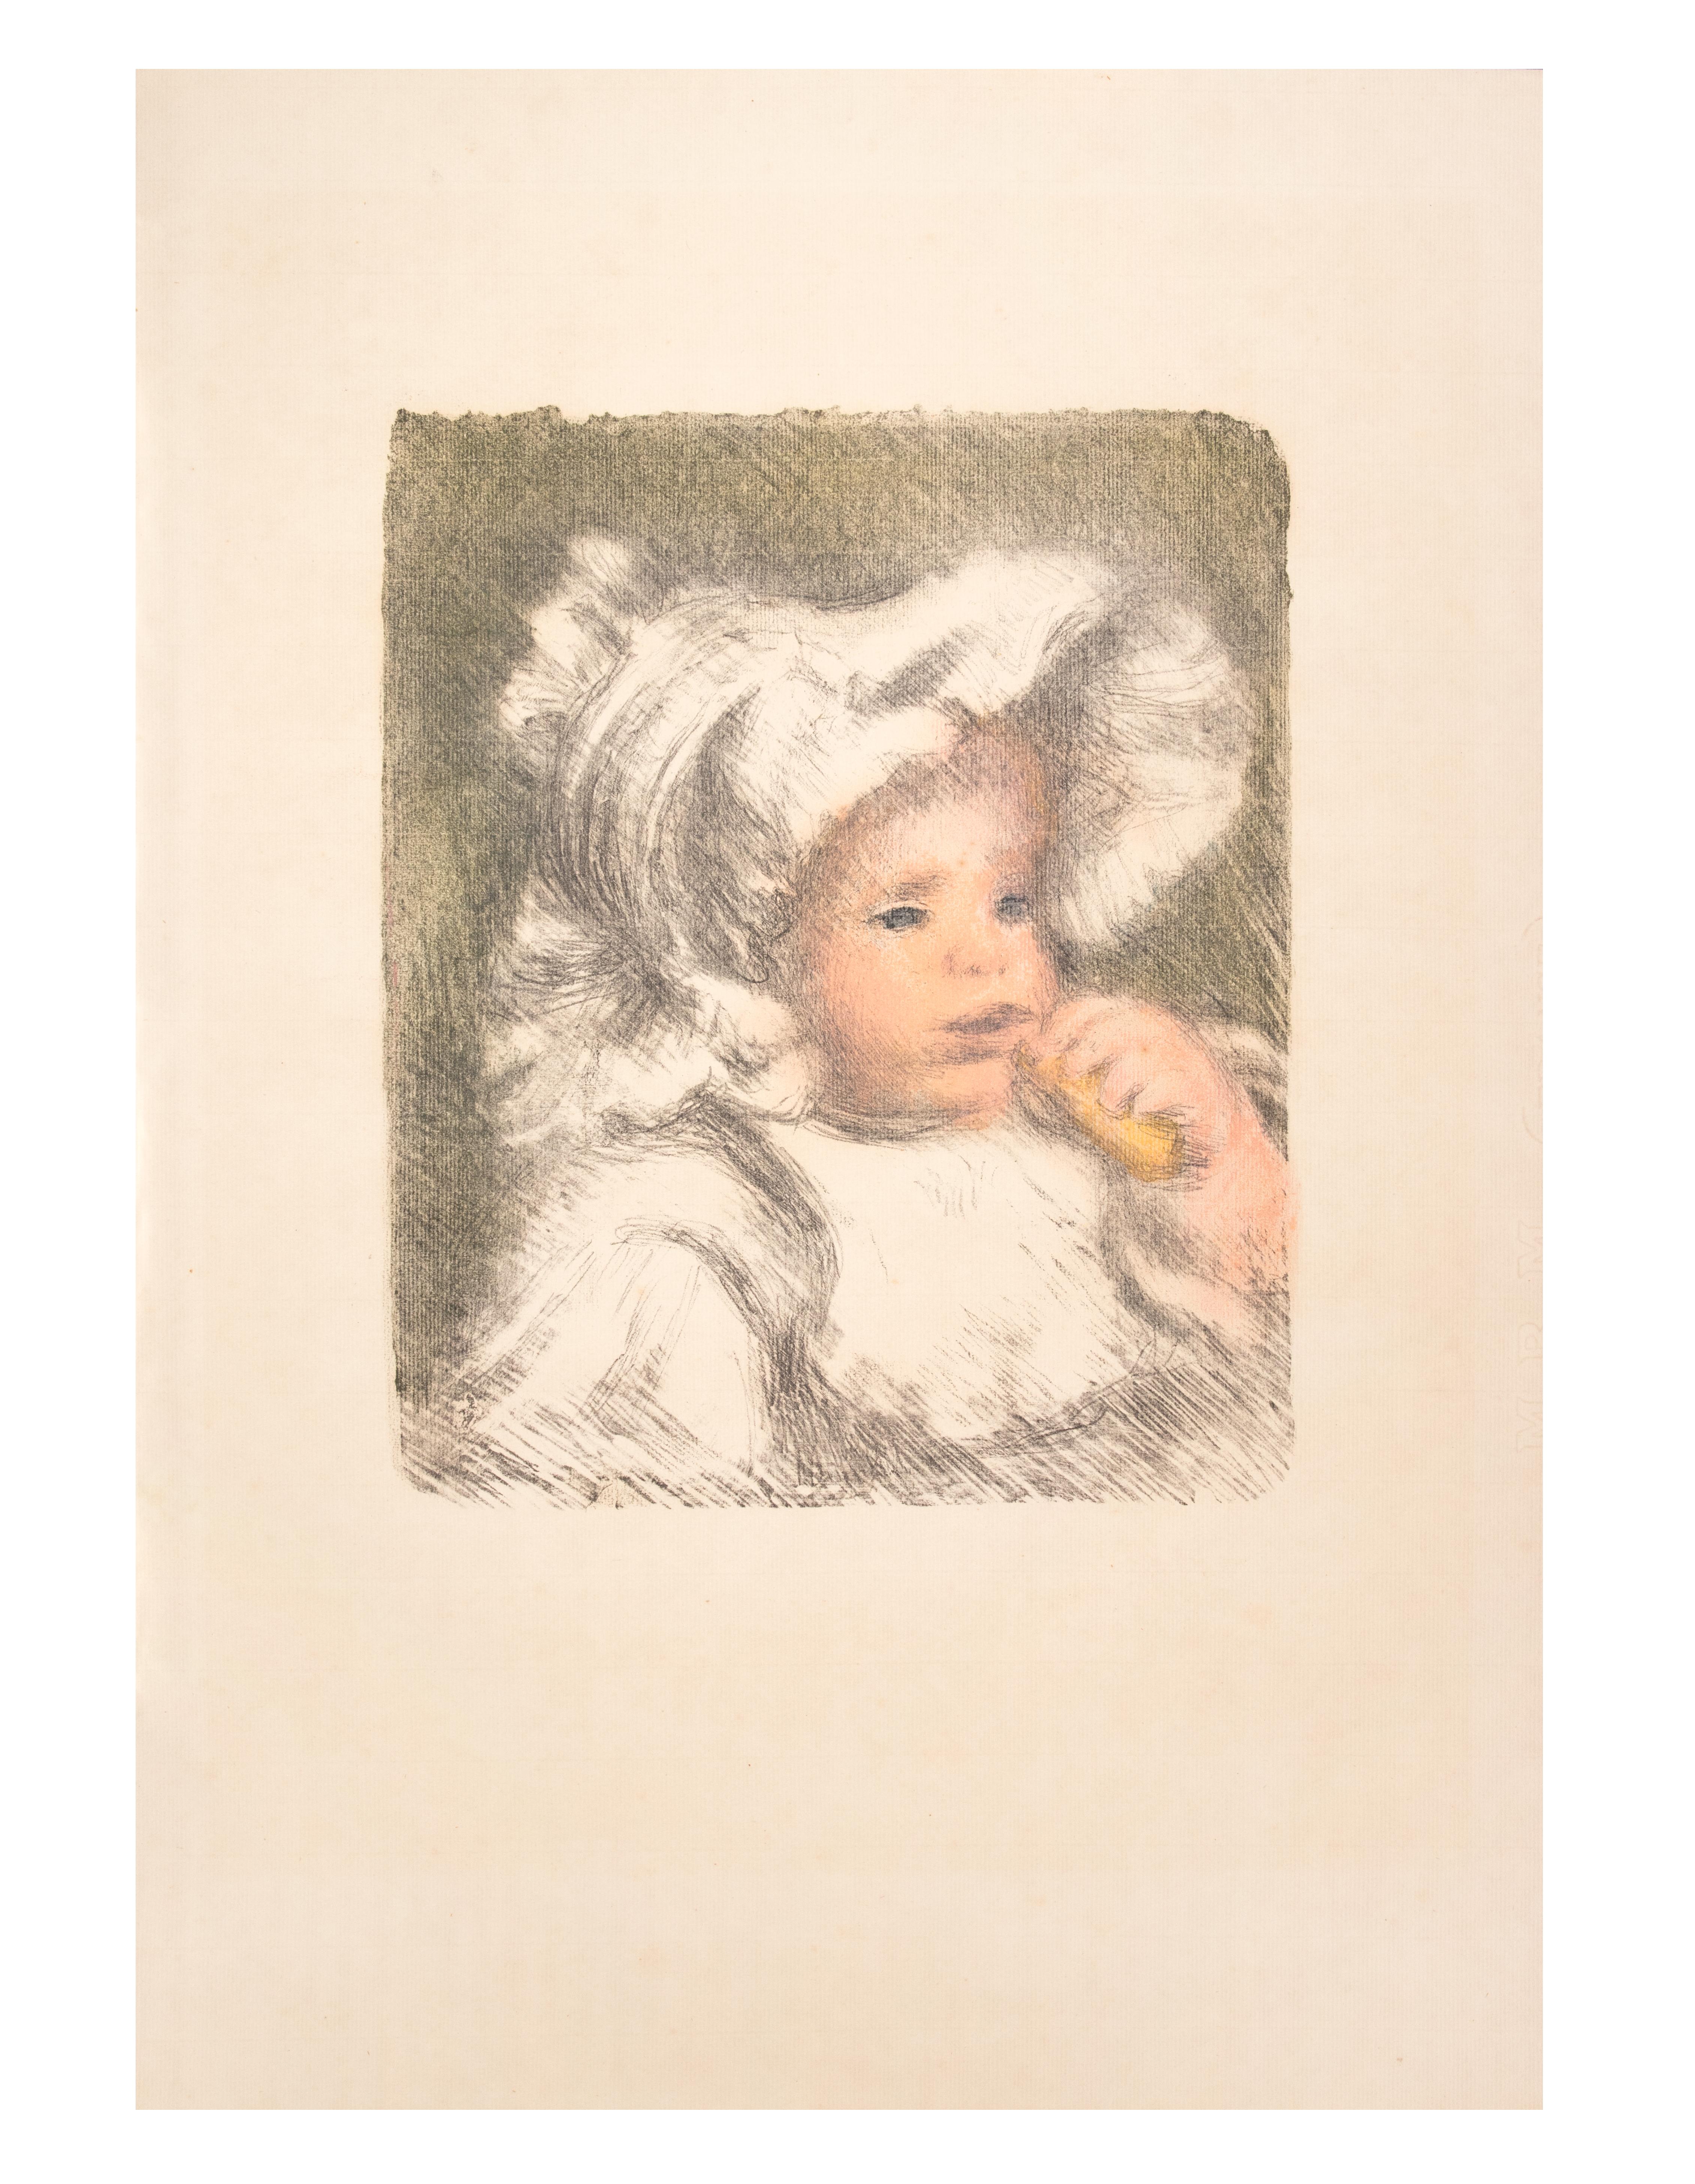 Auflage von 100 Drucken, nicht signiert.
Eines der berühmtesten grafischen Werke Renoirs, das seinen Sohn, den späteren Regisseur Jean Renoir, zeigt. 
Belogs zur Suite "L'Album d'estampes originales de la Galerie Vollard".

Veröffentlicht von